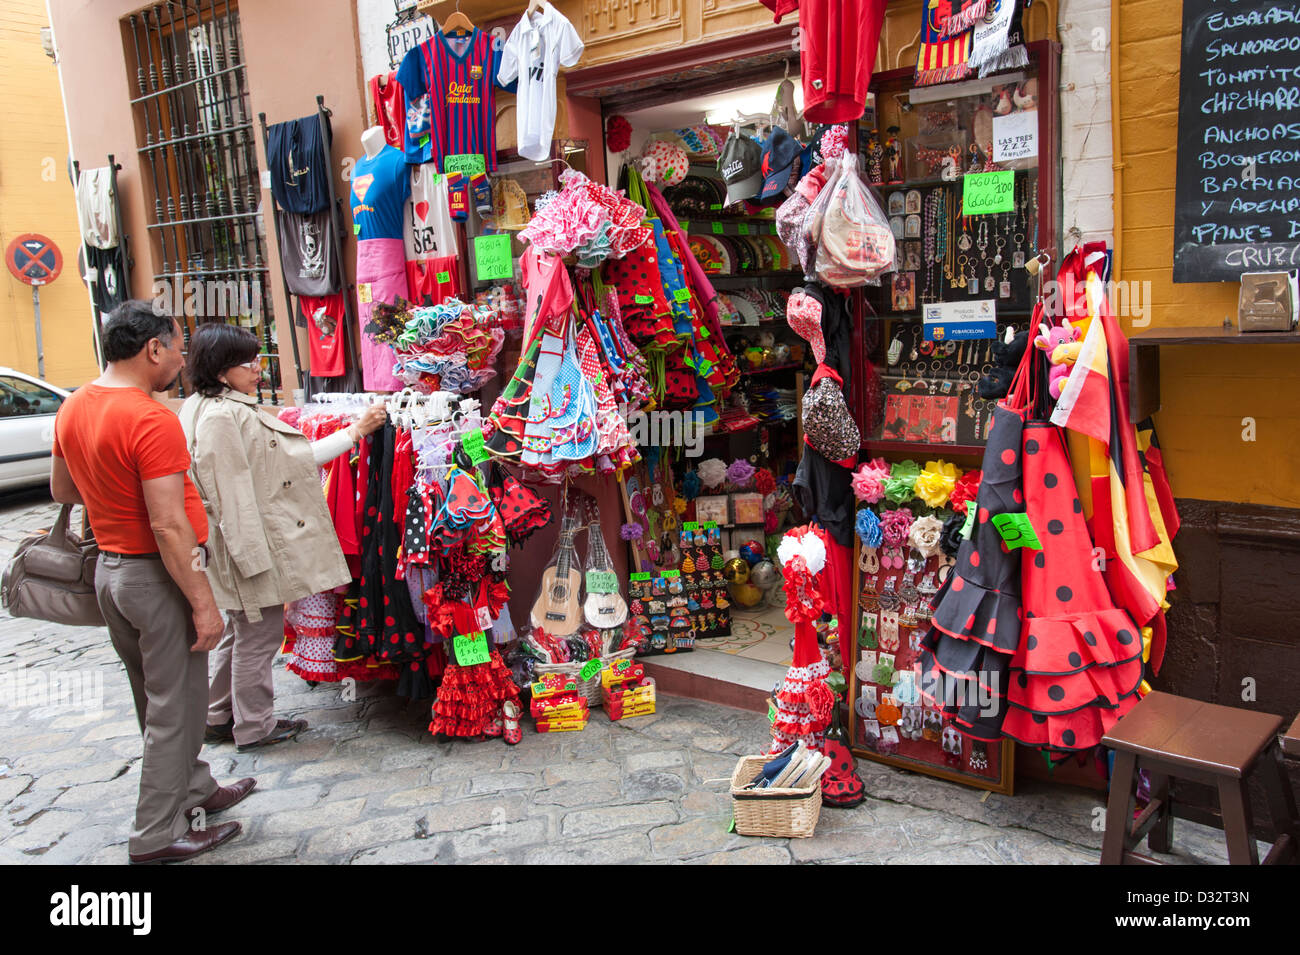 Turista de compras en una tienda de souvenirs, Sevilla, España Foto de stock